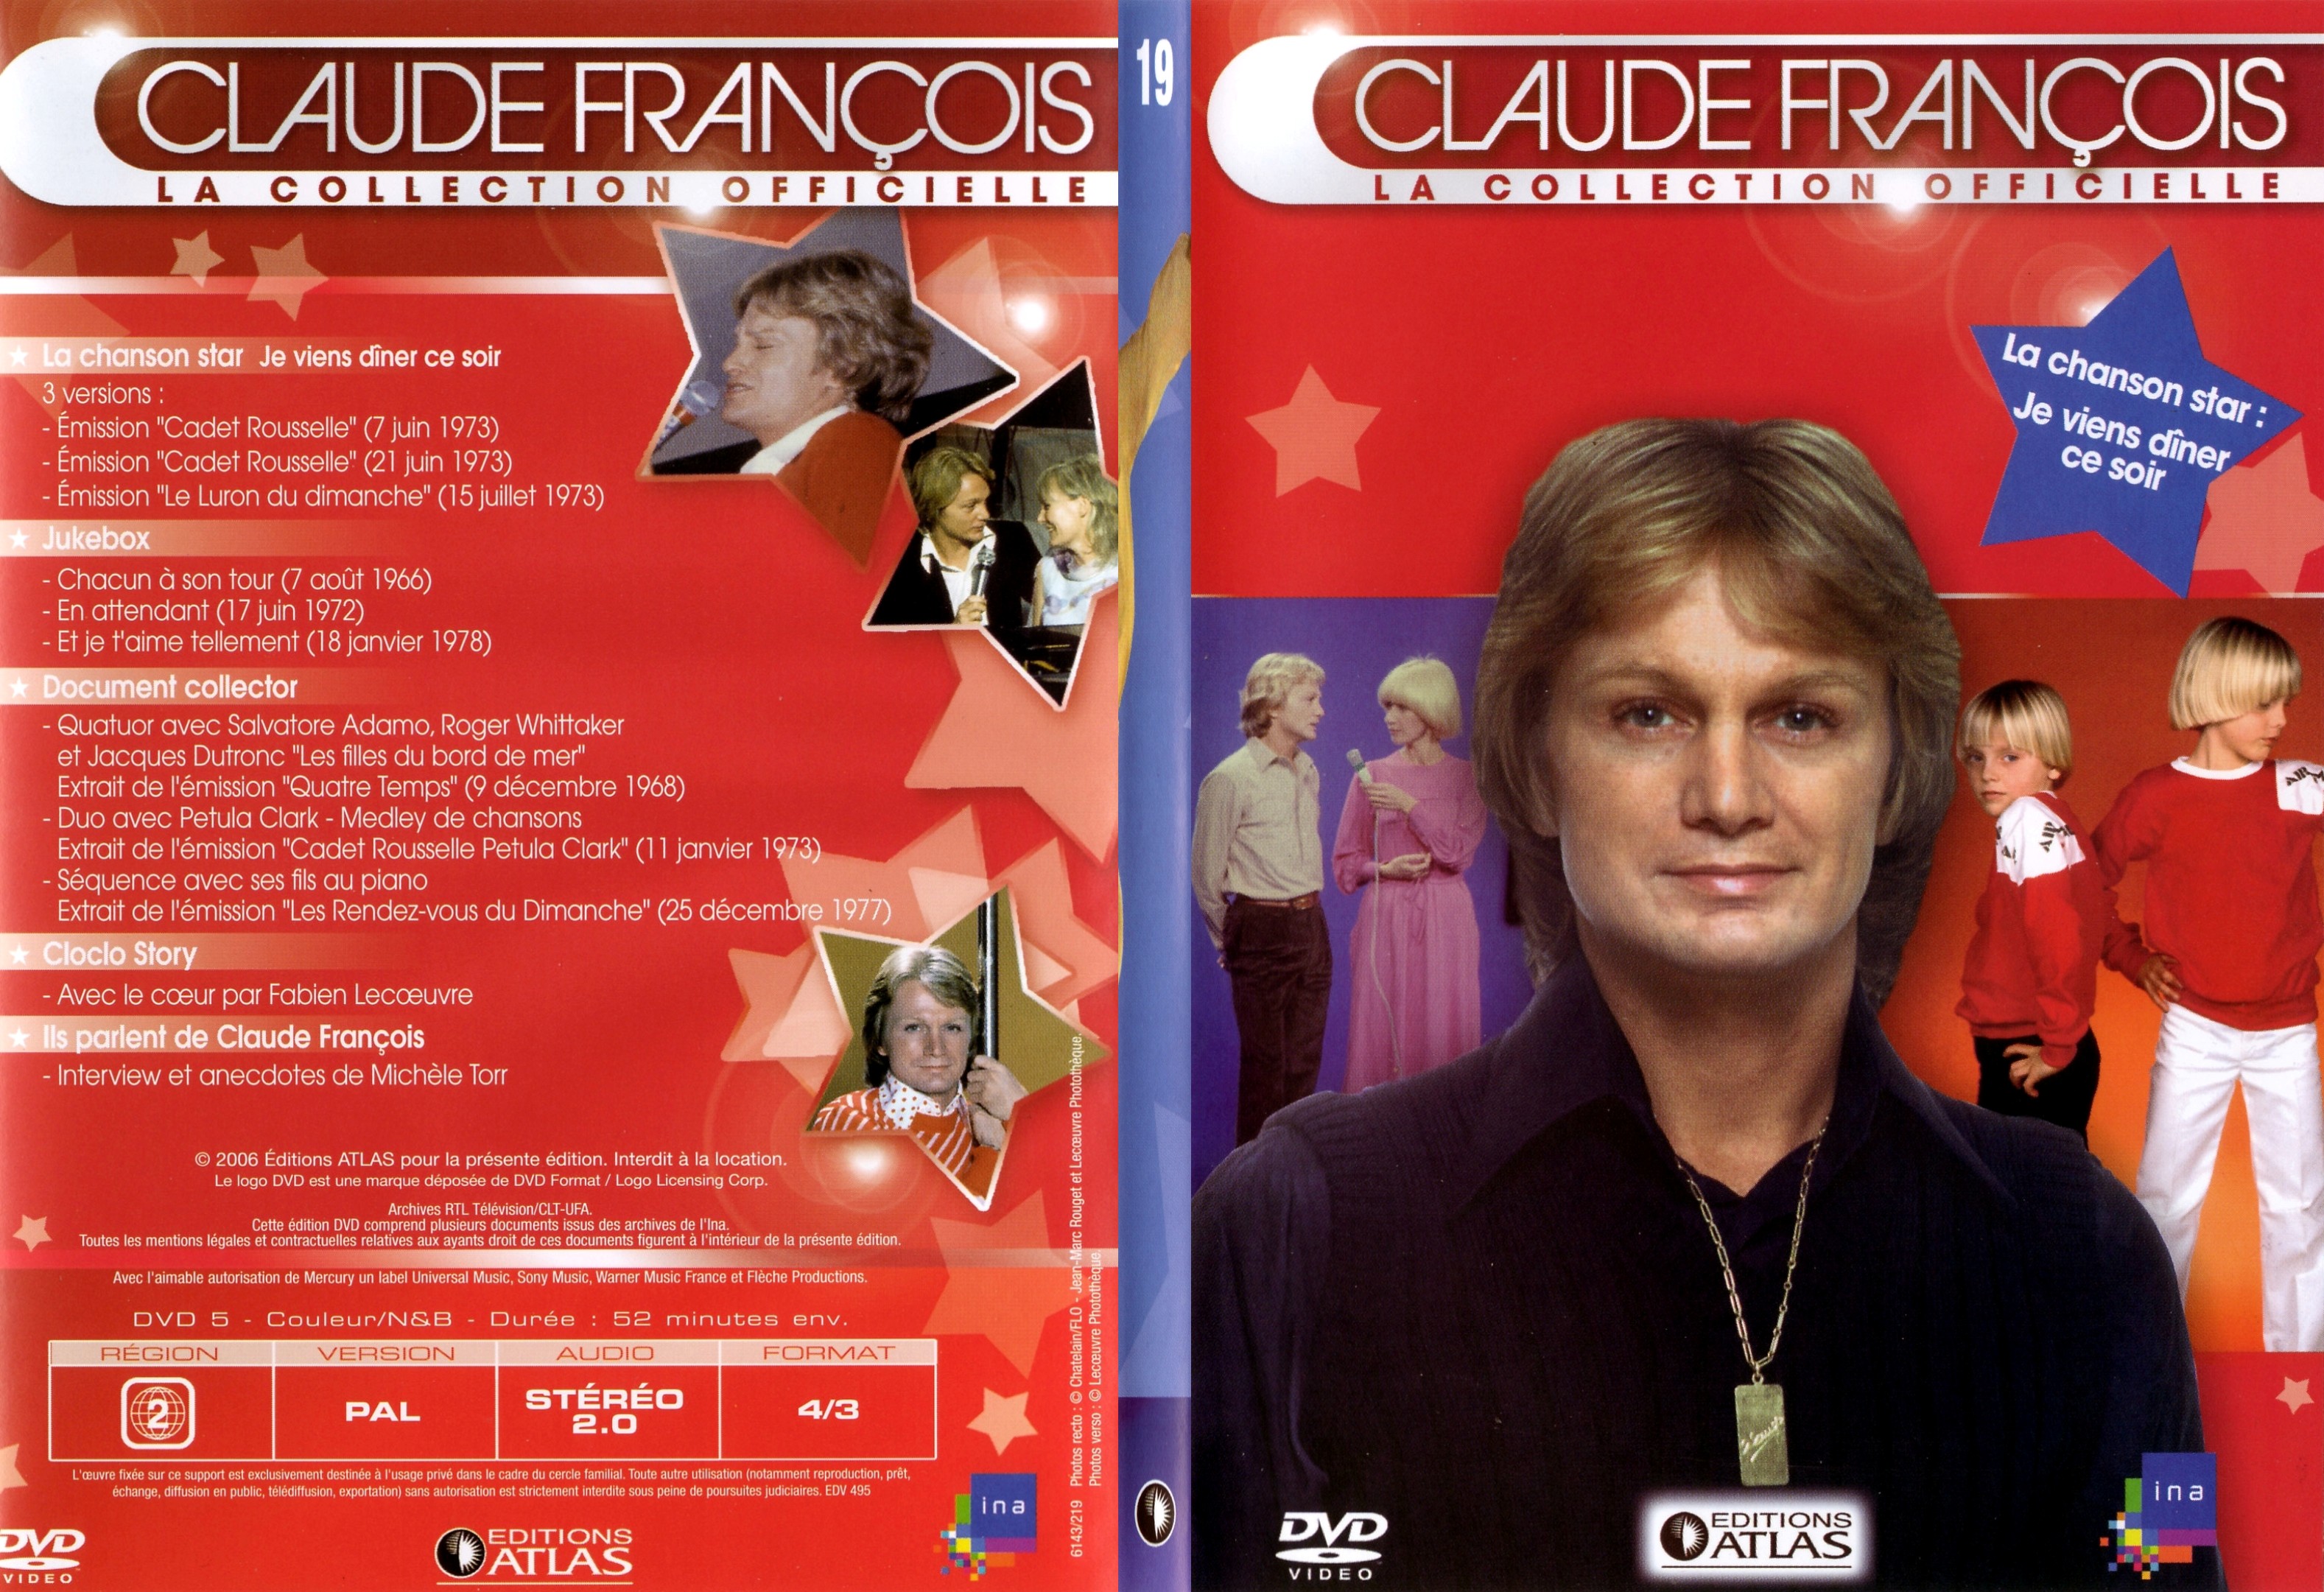 Jaquette DVD Claude francois le collection officielle vol 19 - SLIM